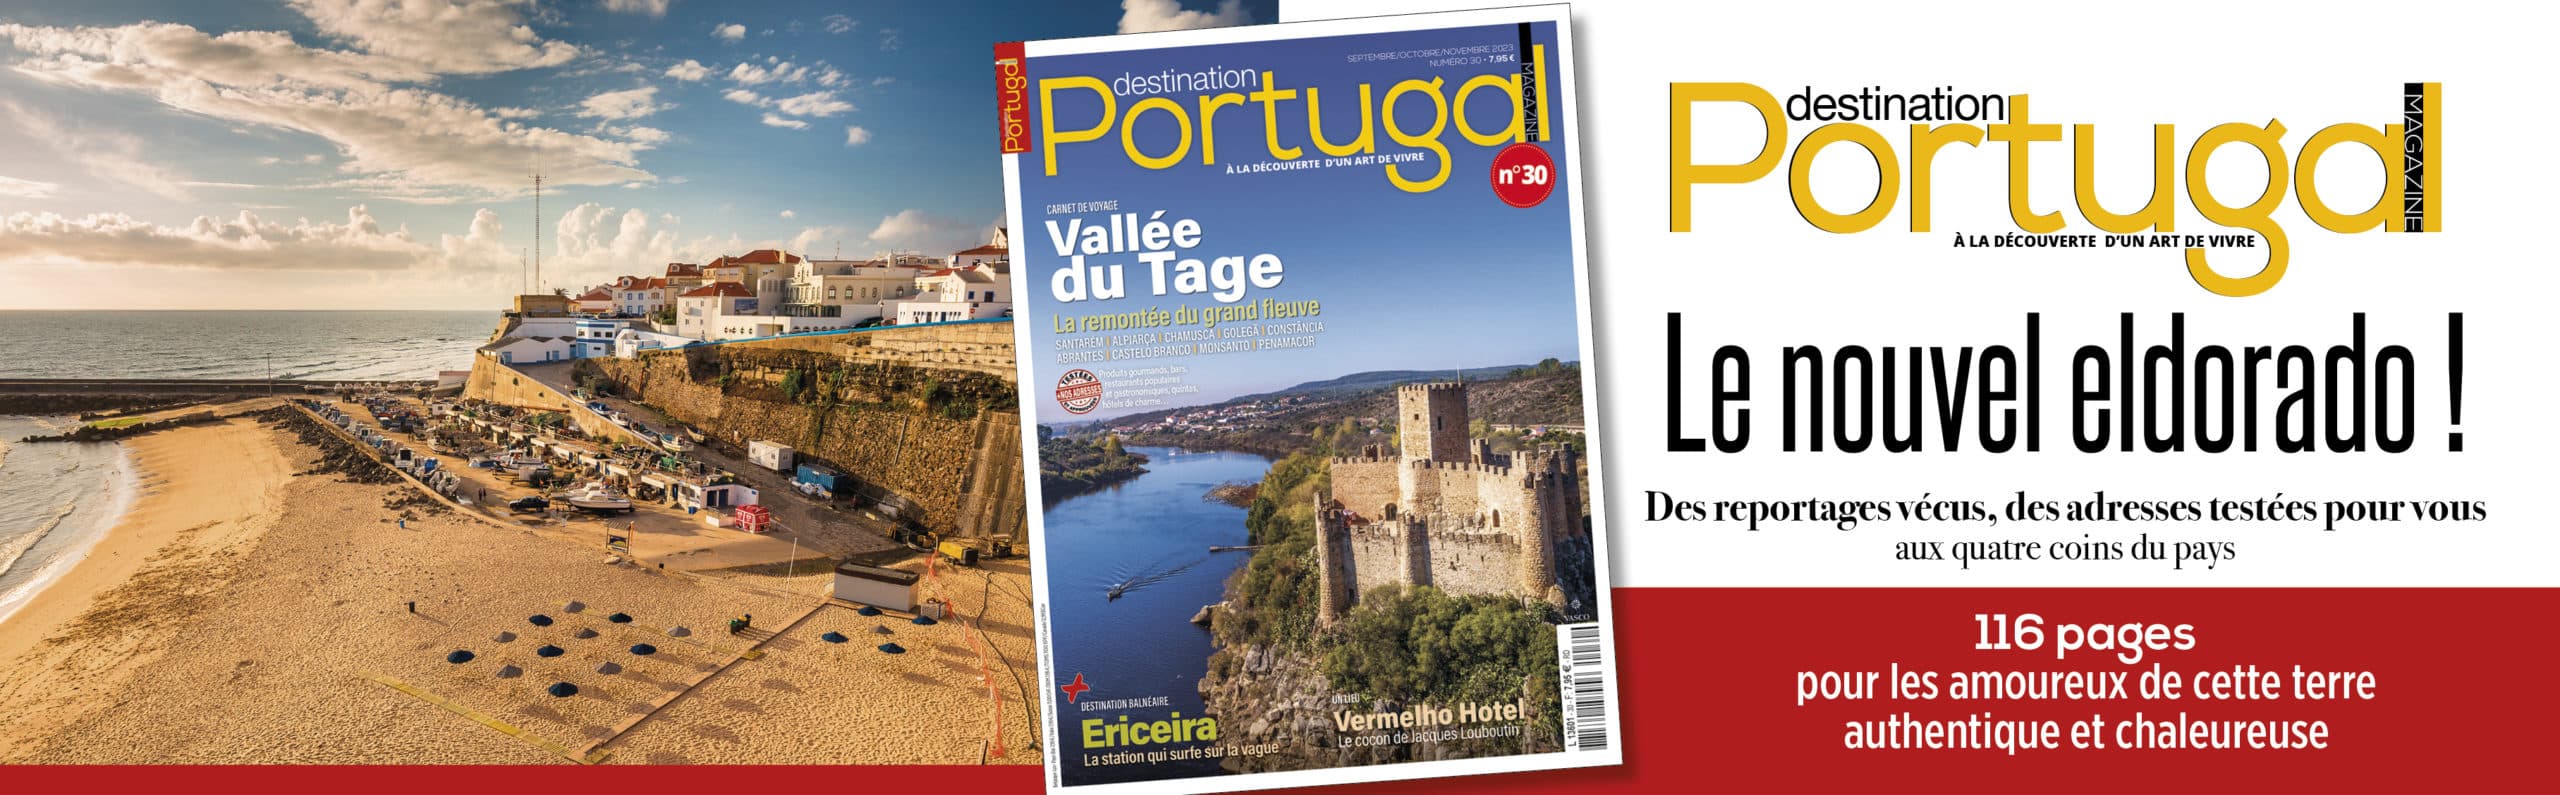 Bannière Destination Portugal n°30